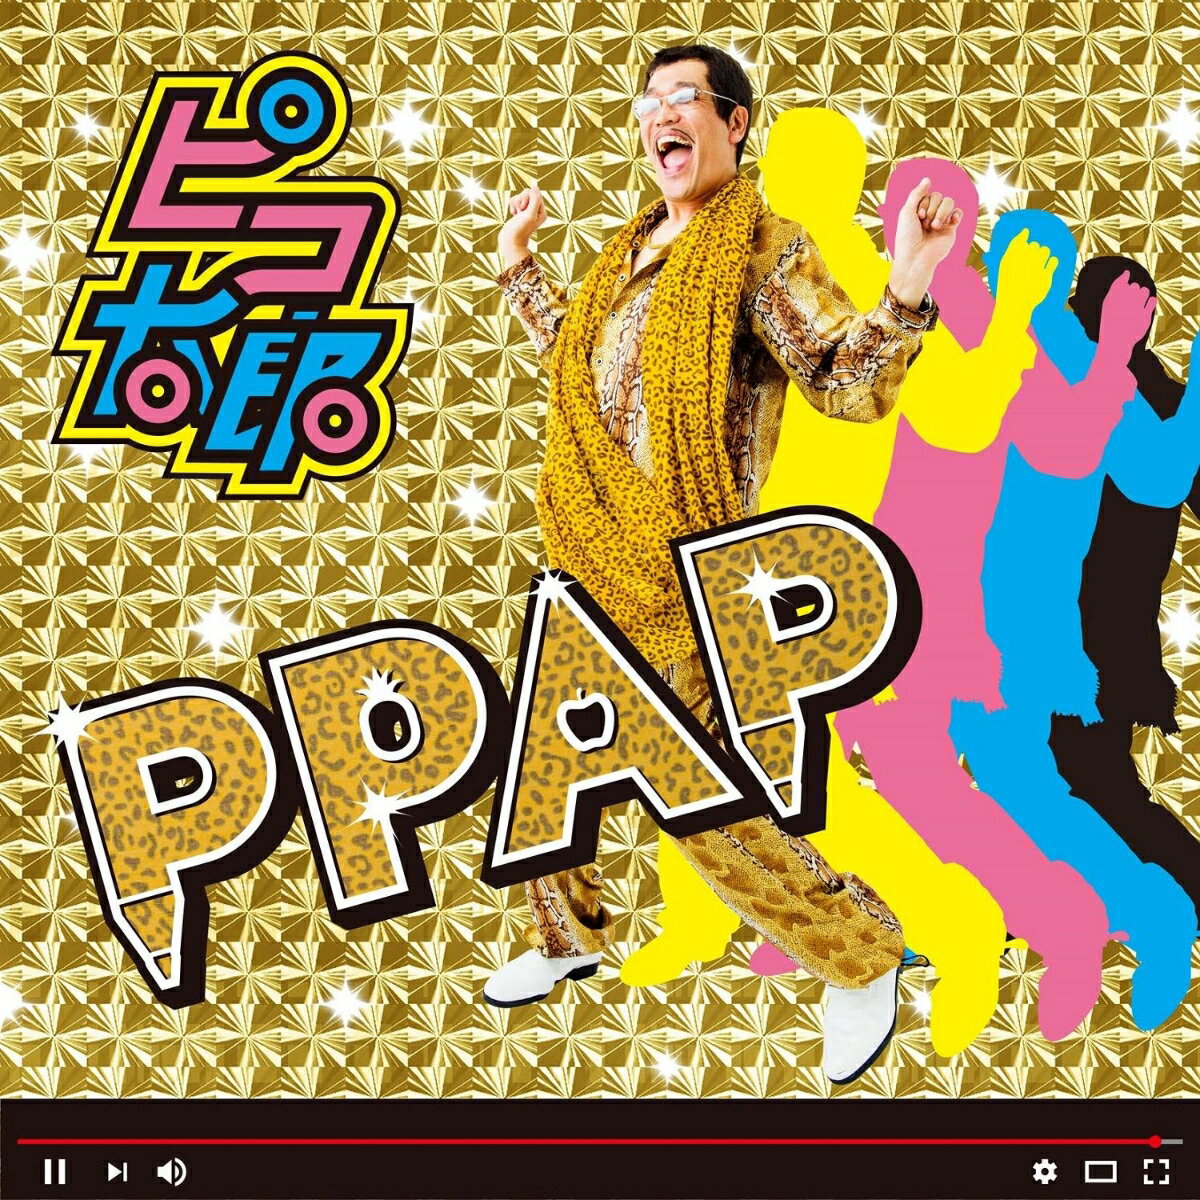 「PPAP（Pen-Pineapple-Apple-Pen）」全世界デビュー！
チープさが売りの千葉出身のシンガーソングライター、53歳ピコ太郎。
PPAPはYouTube公式、累計7000万回再生突破！関連含む総再生数は驚異の4億超え！
ジャスティン・ビーバーもお気に入りとつぶやき、そして世界中の有名メディアからも注目されている。
また日本でも各界の著名人がファンとなり、日本をはじめ、世界中から踊ってみた動画が1万投稿以上。今、大ブームとなっている。
ピコ太郎の目標は、紅白歌合戦とサマソニ出演。 恩人シンガー、ジャスティン・ビーバー。ピコポップソングを世の中にお届けしまっす！

＜収録内容＞
01.ピコアタック 
02.PPAP(ペンパイナッポーアッポーペン)
03.ロミータ・ハシミコフ
04.ネオ・サングラス
05.KASHITE KUDASAIYO
06.べったら漬けが大好き
07.☆スイーツまとめて星になれ☆！
08.ねぇ・・・
09.PPAP(ペンパイナッポーアッポーペン)「ロング」バージョン
10.二文字目ミステイク
11.ピコウォーク 
12.PPAP(ペンパイナッポーアッポーペン) KOSAKA DAIMAOU REMIX
13.今いる場所、それはここ
14.変わりゆく女
15.PPAP(ペンパイナッポーアッポーペン) KOSAKA DAIMAOU REMIX ver2
16.ヒヨコ選別
17.最終手段
18.YOME
19.カナブンブーンデモエビインビン
20.ピコ太郎のテーマ
21. PPAP(ペンパイナッポーアッポーペン)（オリジナル・カラオケ）
22．ネオ・サングラス（オリジナル・カラオケ）
23．☆スイーツまとめて星になれ☆！（オリジナル・カラオケ）
24．PPAP(ペンパイナッポーアッポーペン)「ロング」バージョン（オリジナル・カラオケ）
25．KASHITE KUDASAIYO（オリジナル・カラオケ）